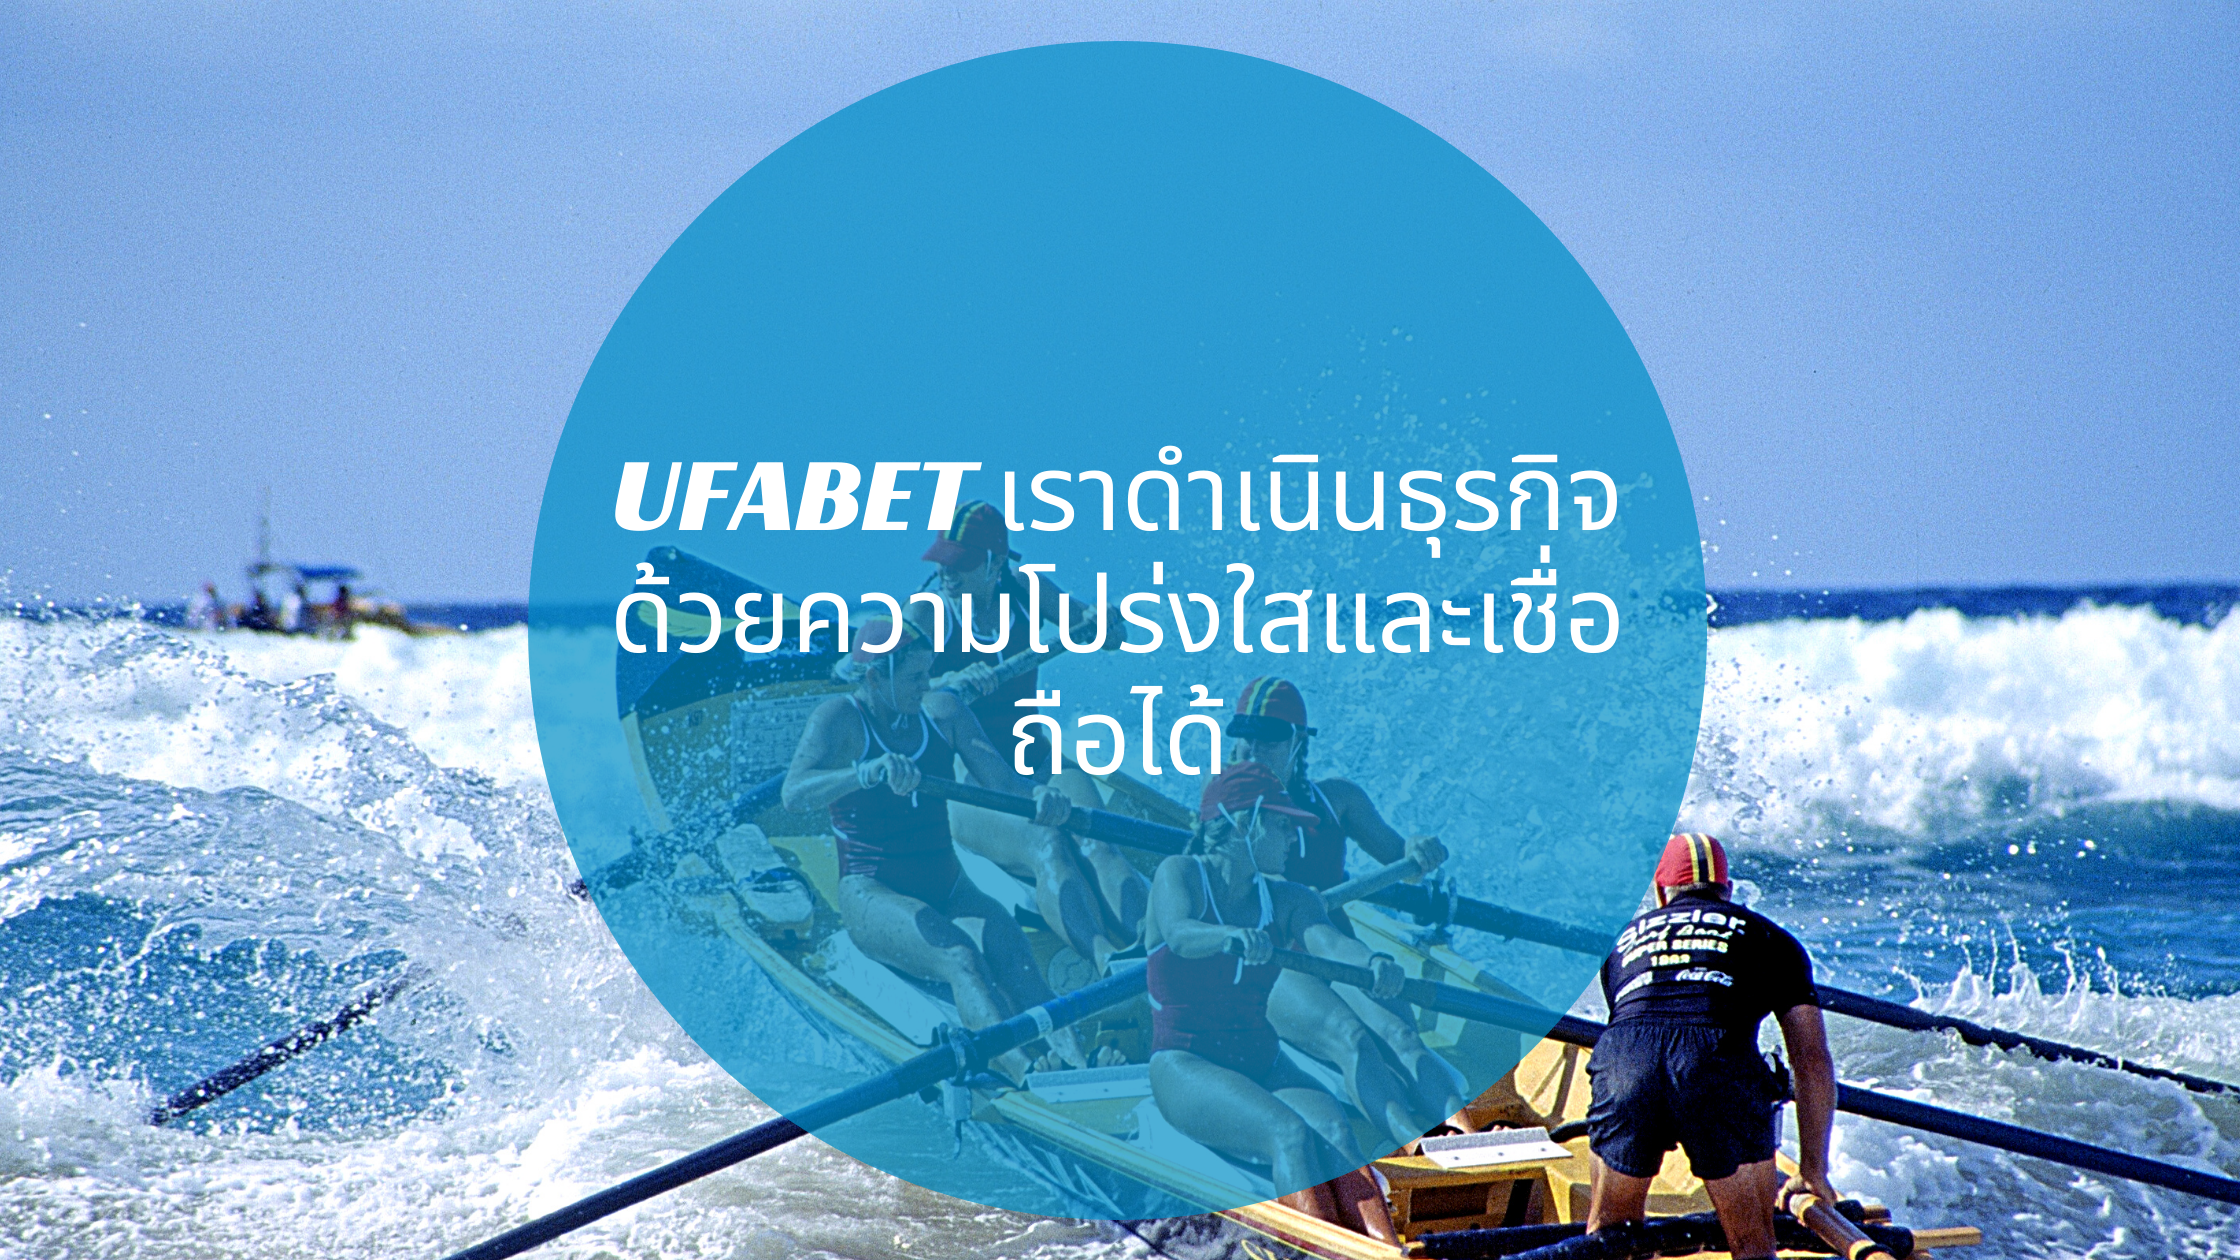 UFABET เราดำเนินธุรกิจด้วยความโปร่งใสและเชื่อถือได้